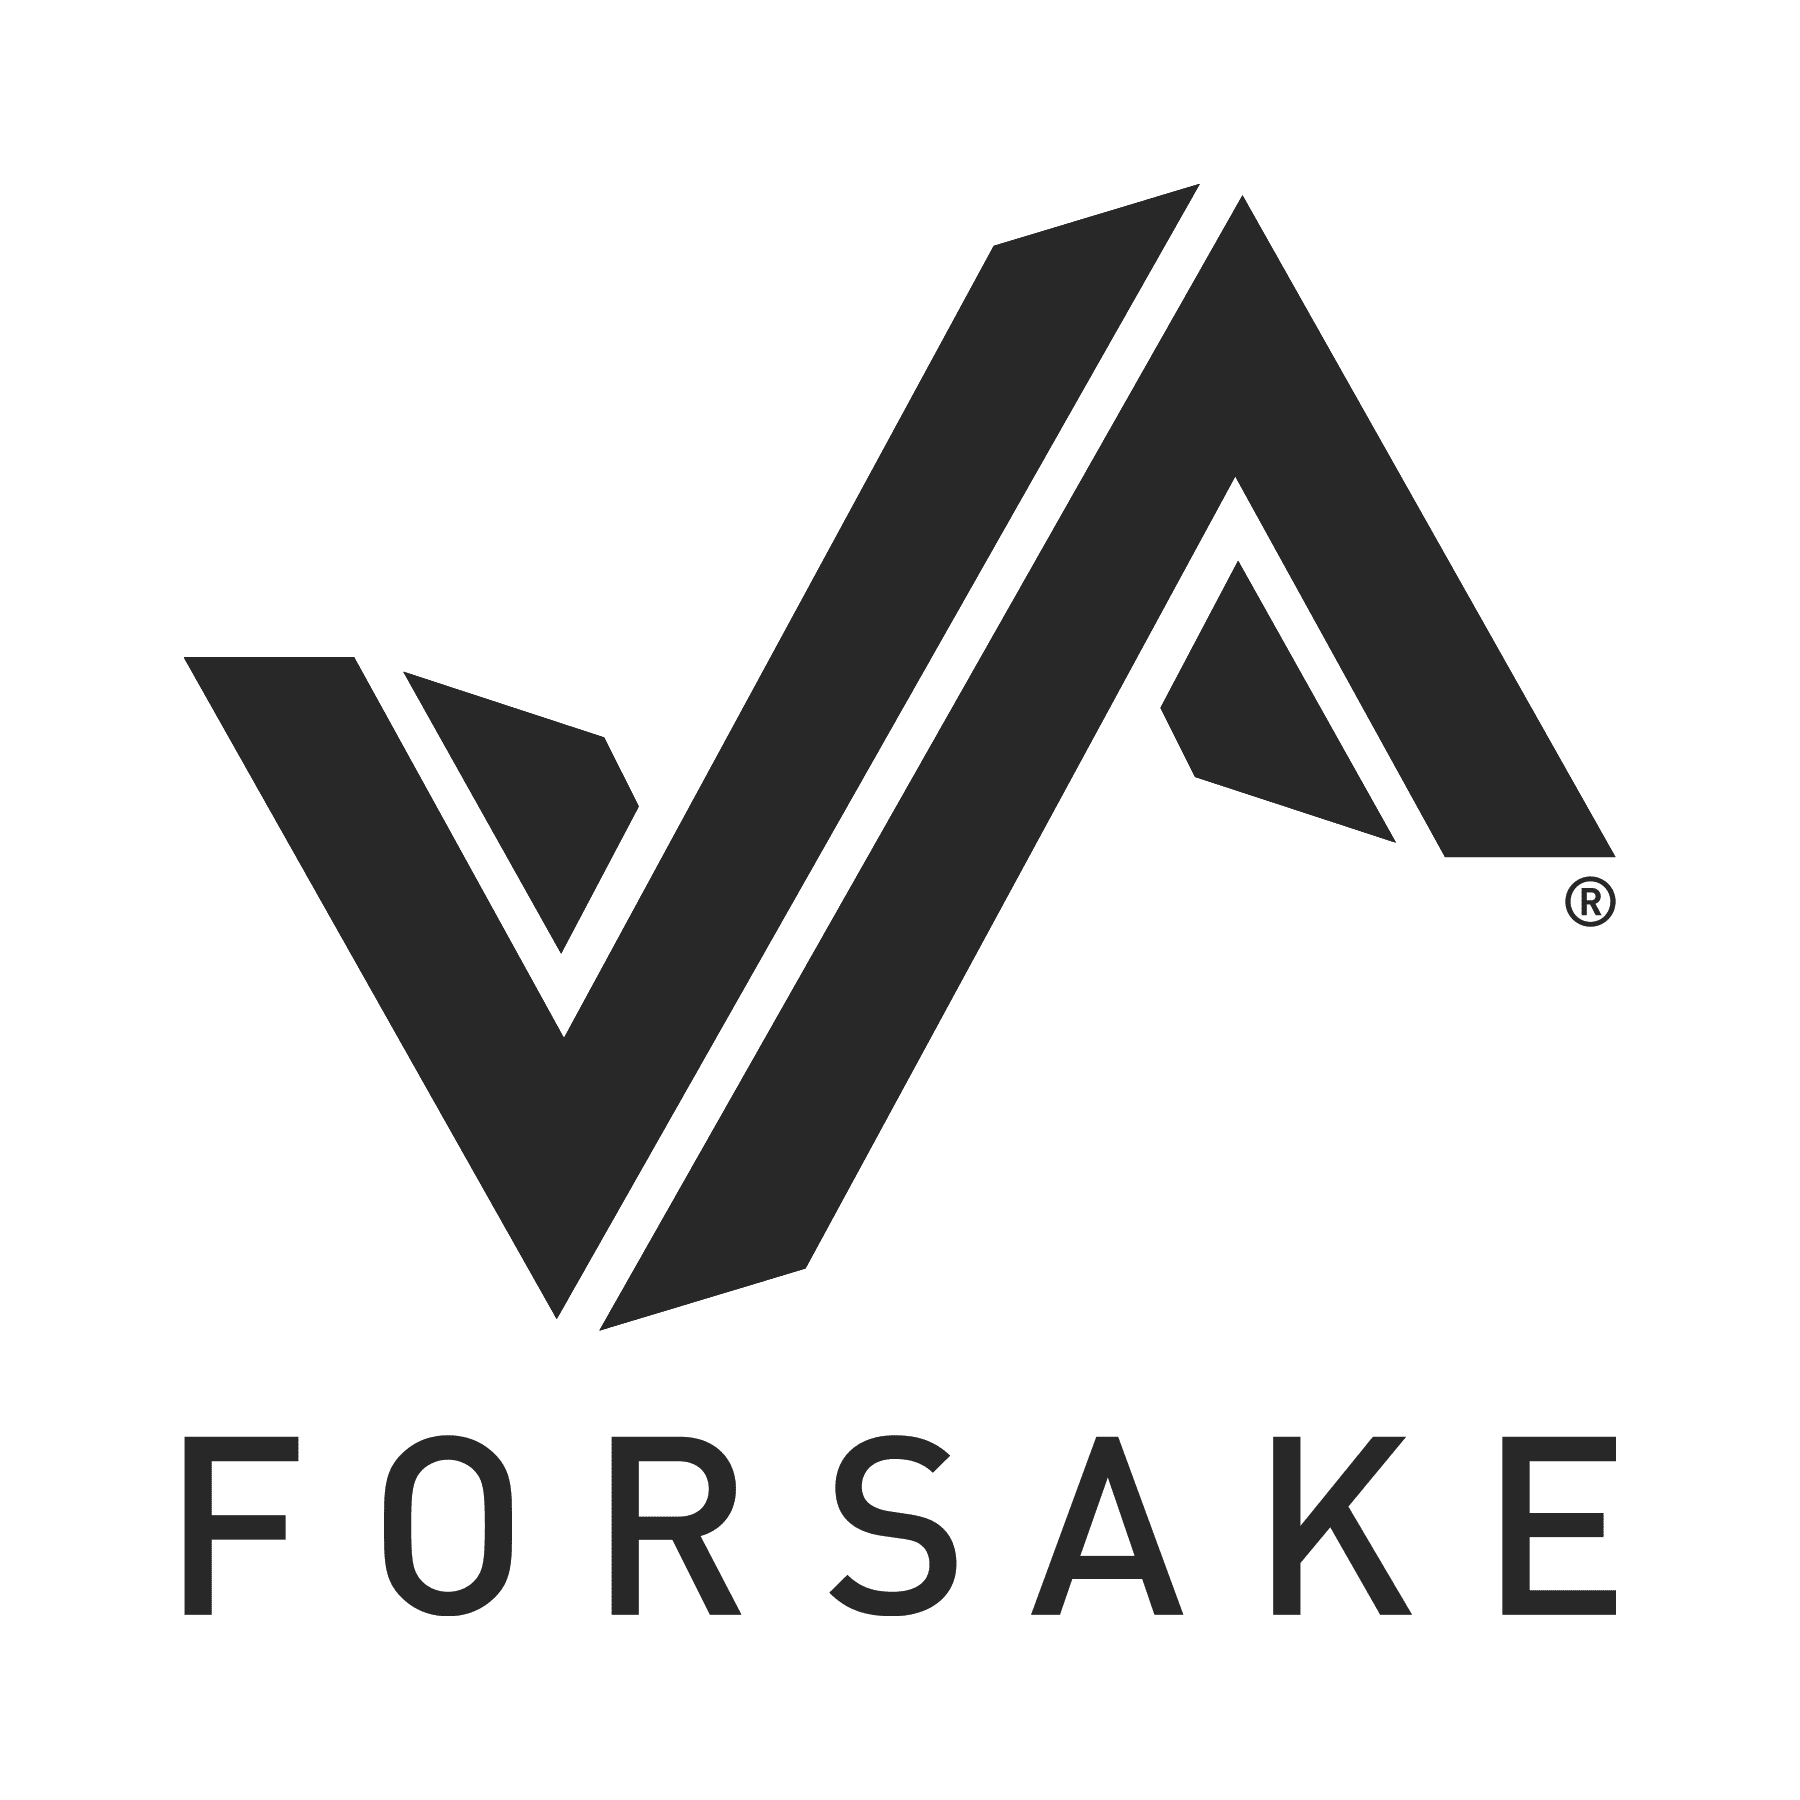 Forsake_logo.png